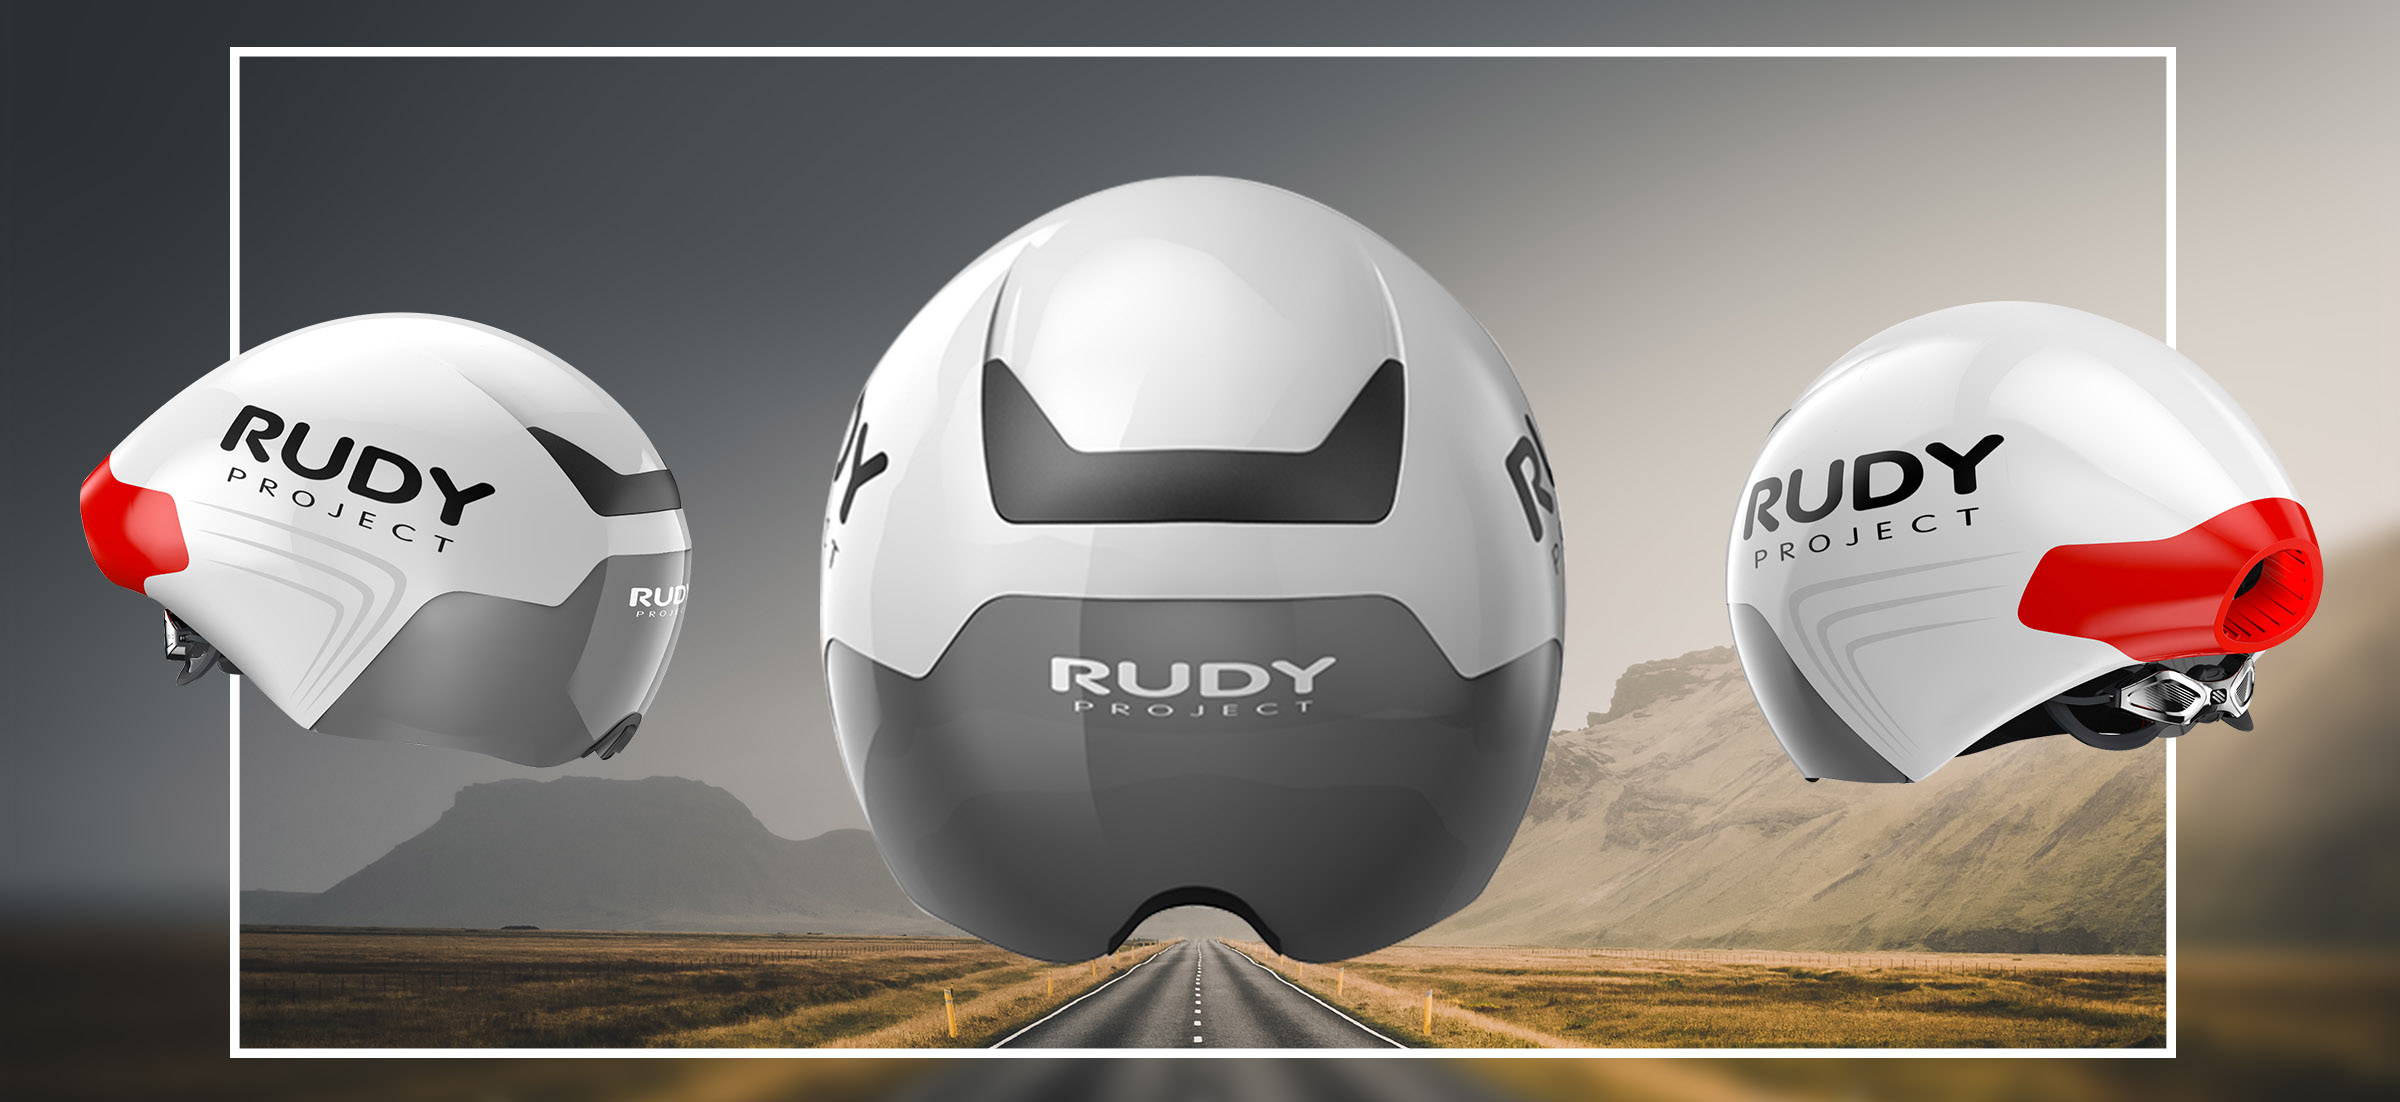 Rudy Project Helmet Protector Triathlon Visiere e Lenti Ricambio